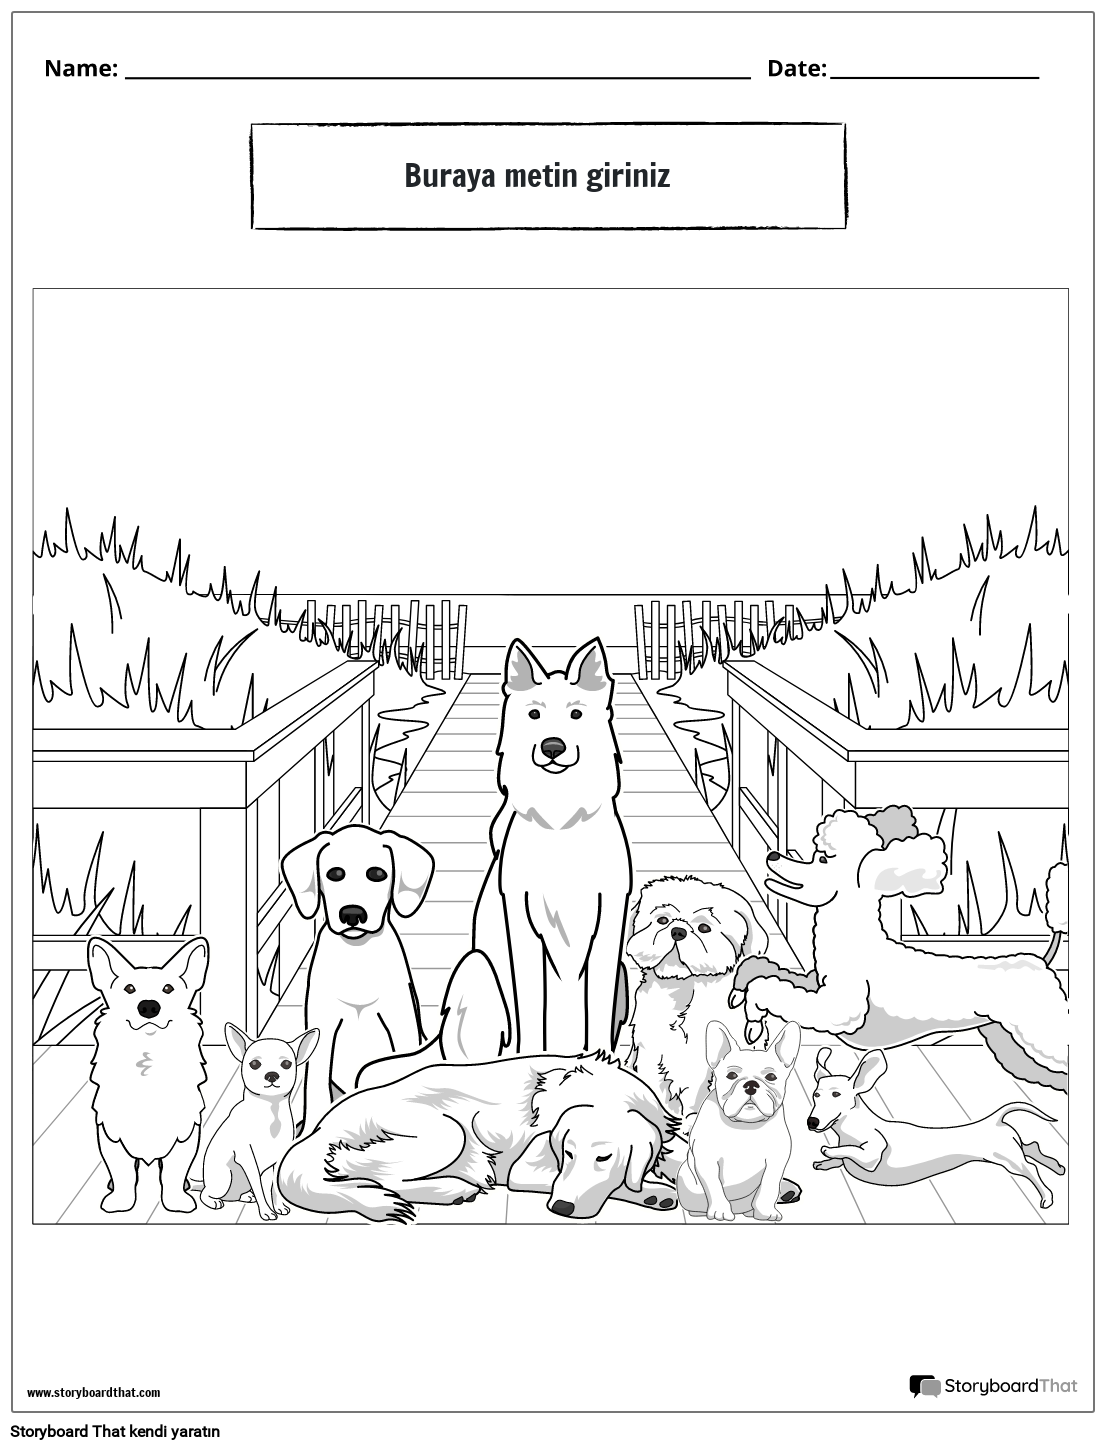 köpek temalı boyama sayfası